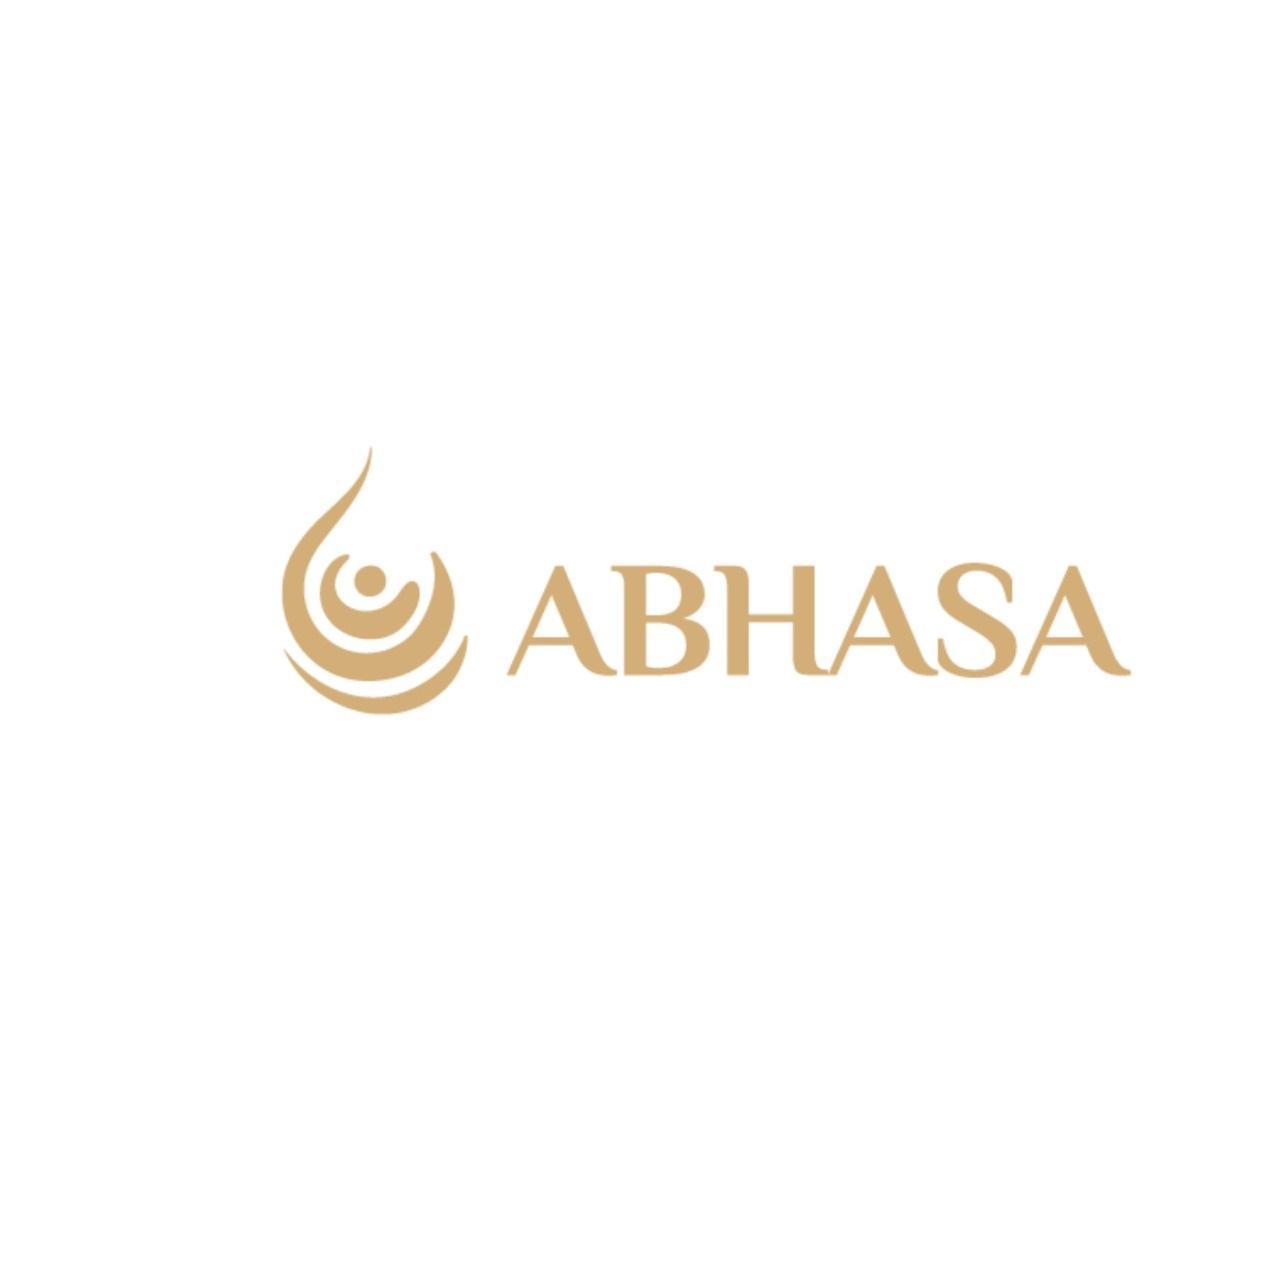 Abhasa Abhasa